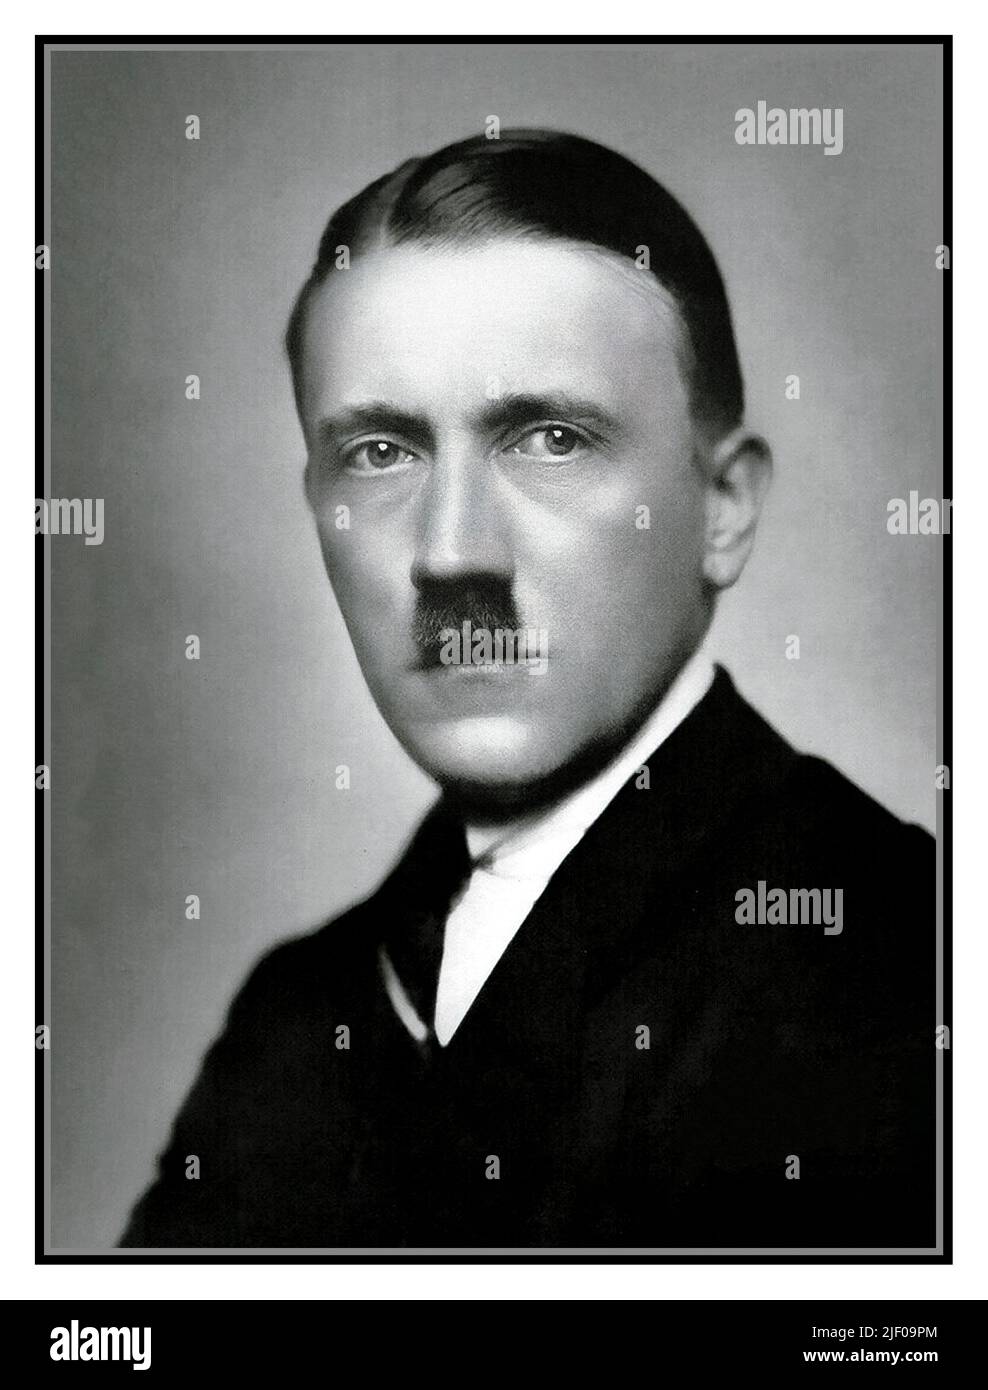 ADOLF HITLER FORMELL STUDIOPORTRAIT 1920 s s s&W Studio posed Porträtfoto von Heinrich Hoffmann von jungen politisch aktiven Nazi Adolf Hitler Stockfoto